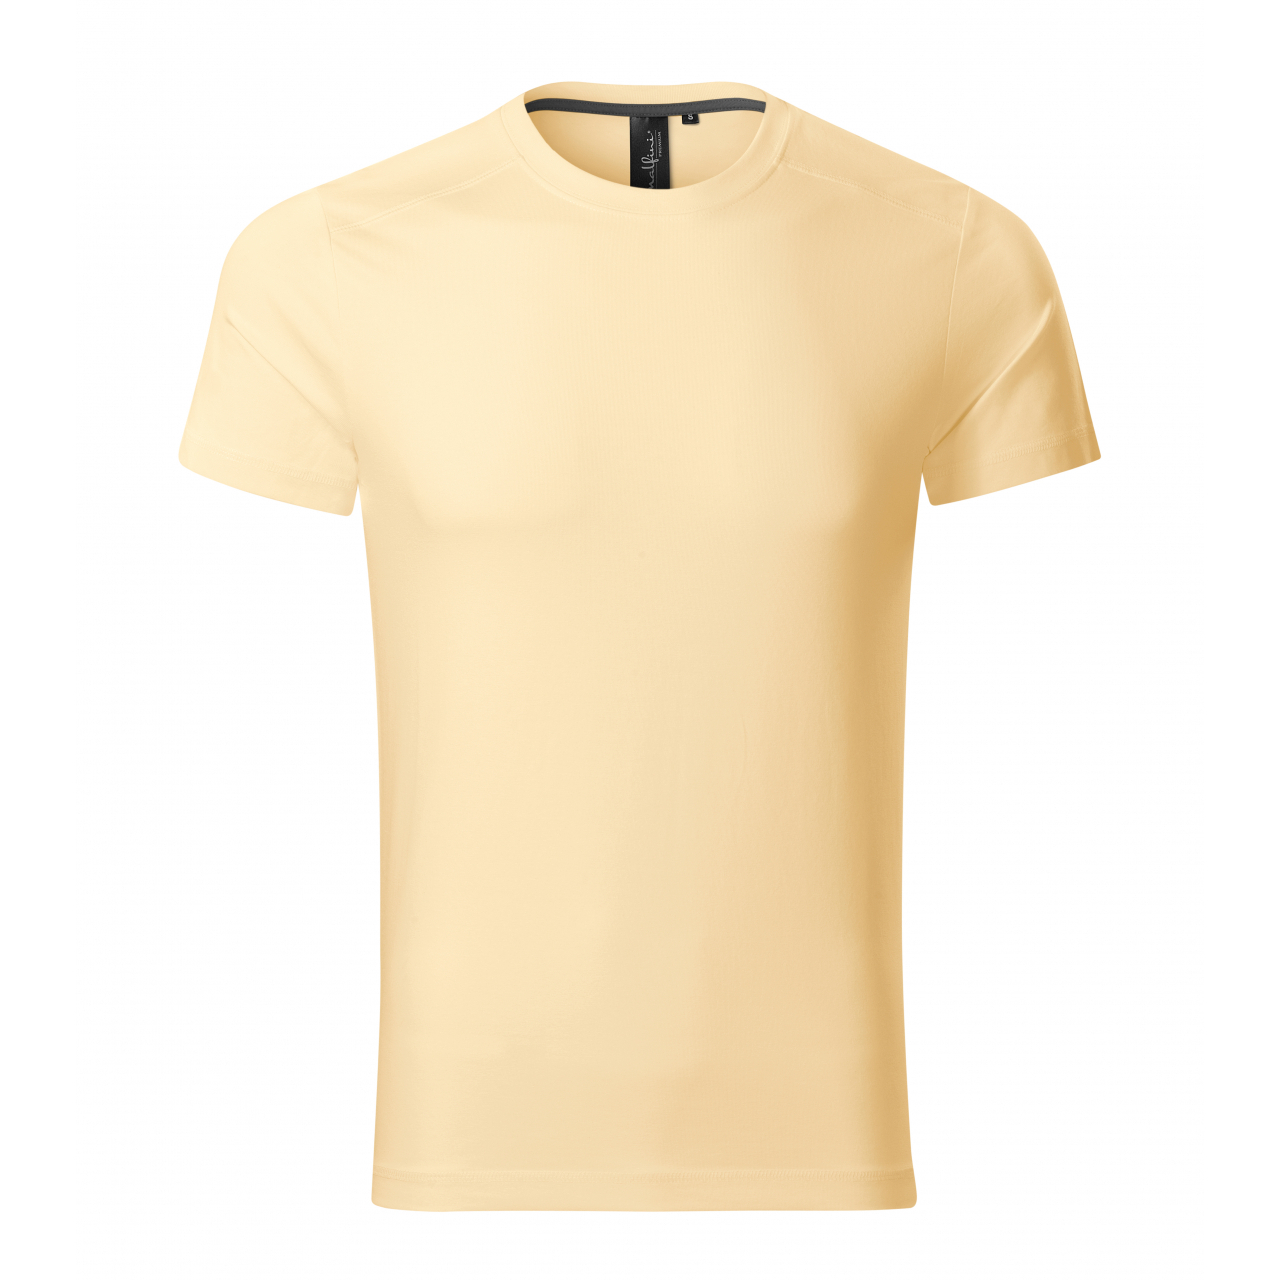 Tričko pánské Malfini Action - žluté, XL